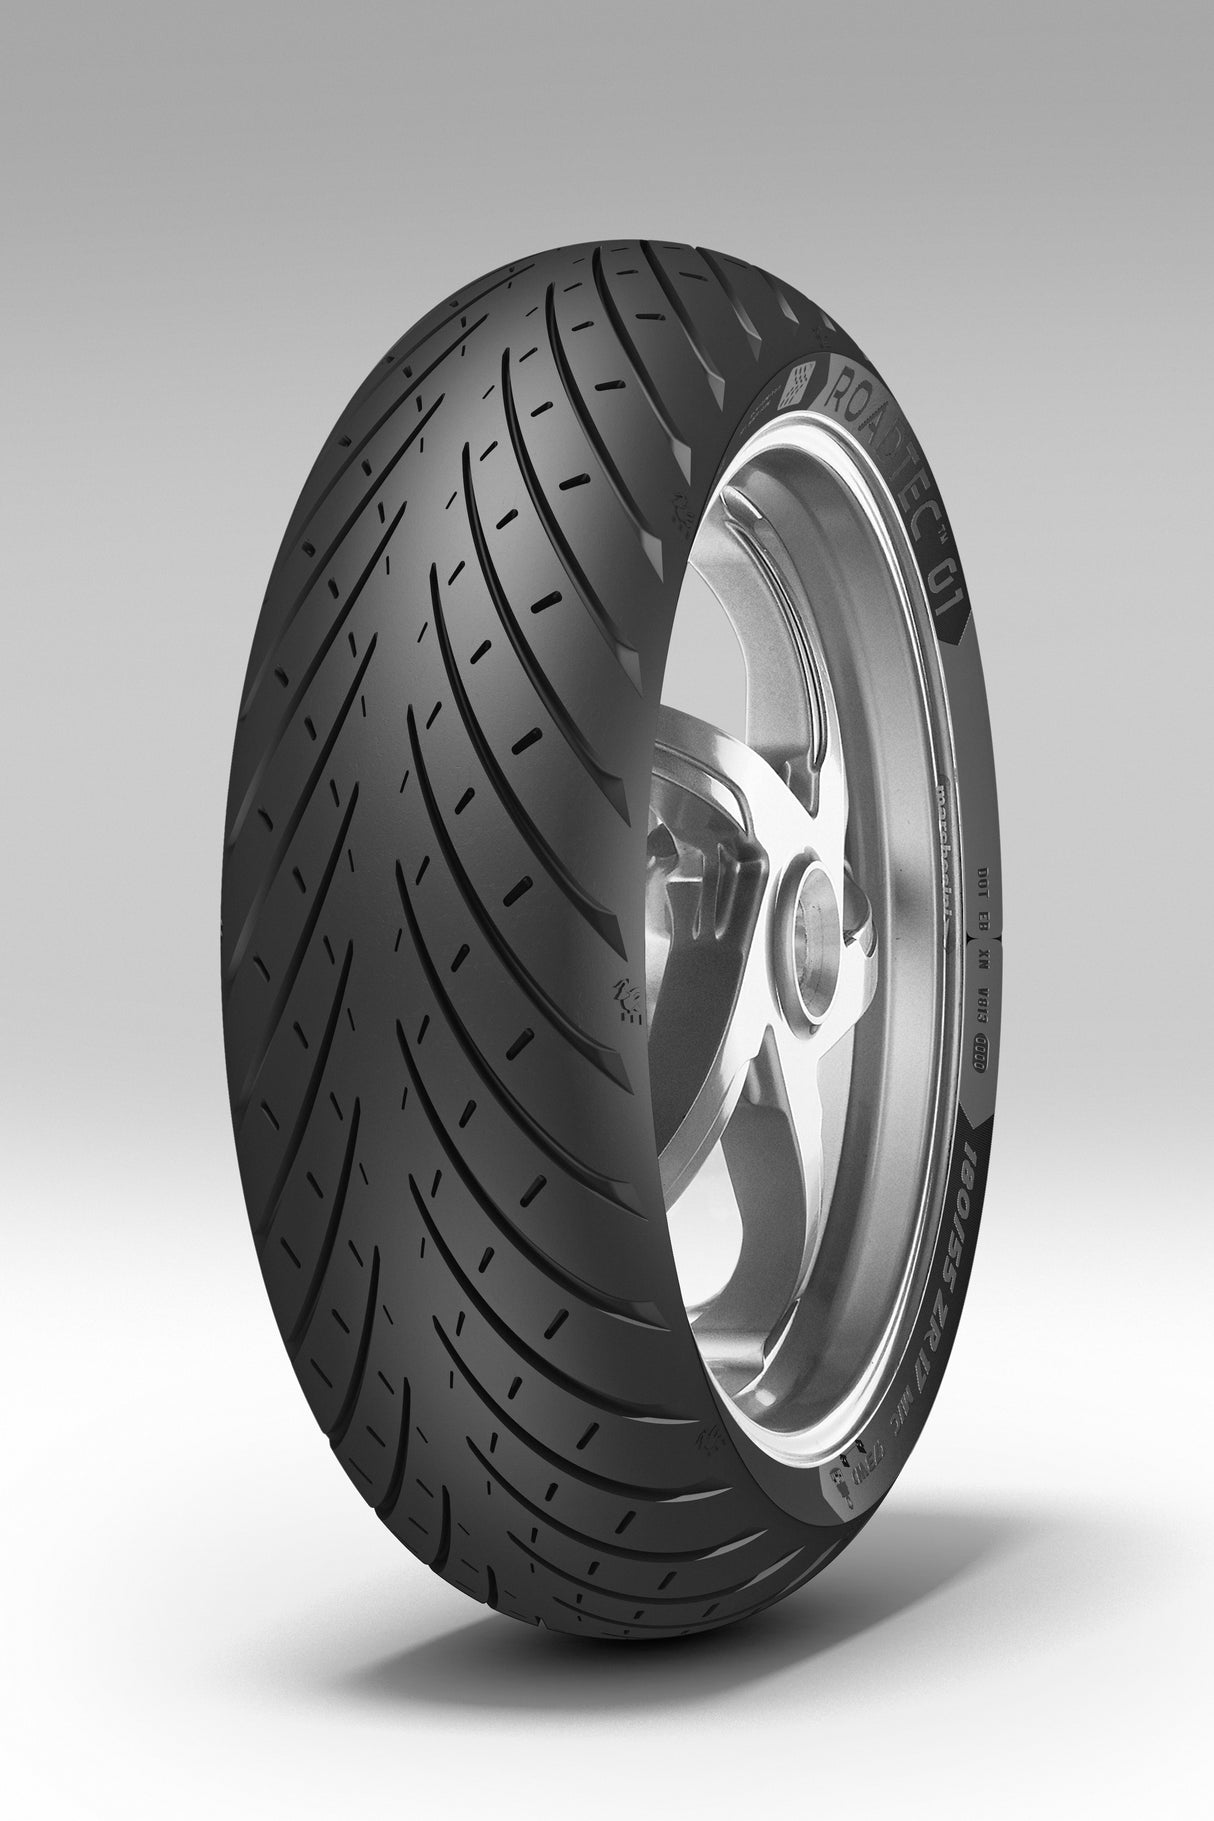 Metzeler Roadtec 01 190/55ZR17 (75W) HWM T/L Rear Tyre